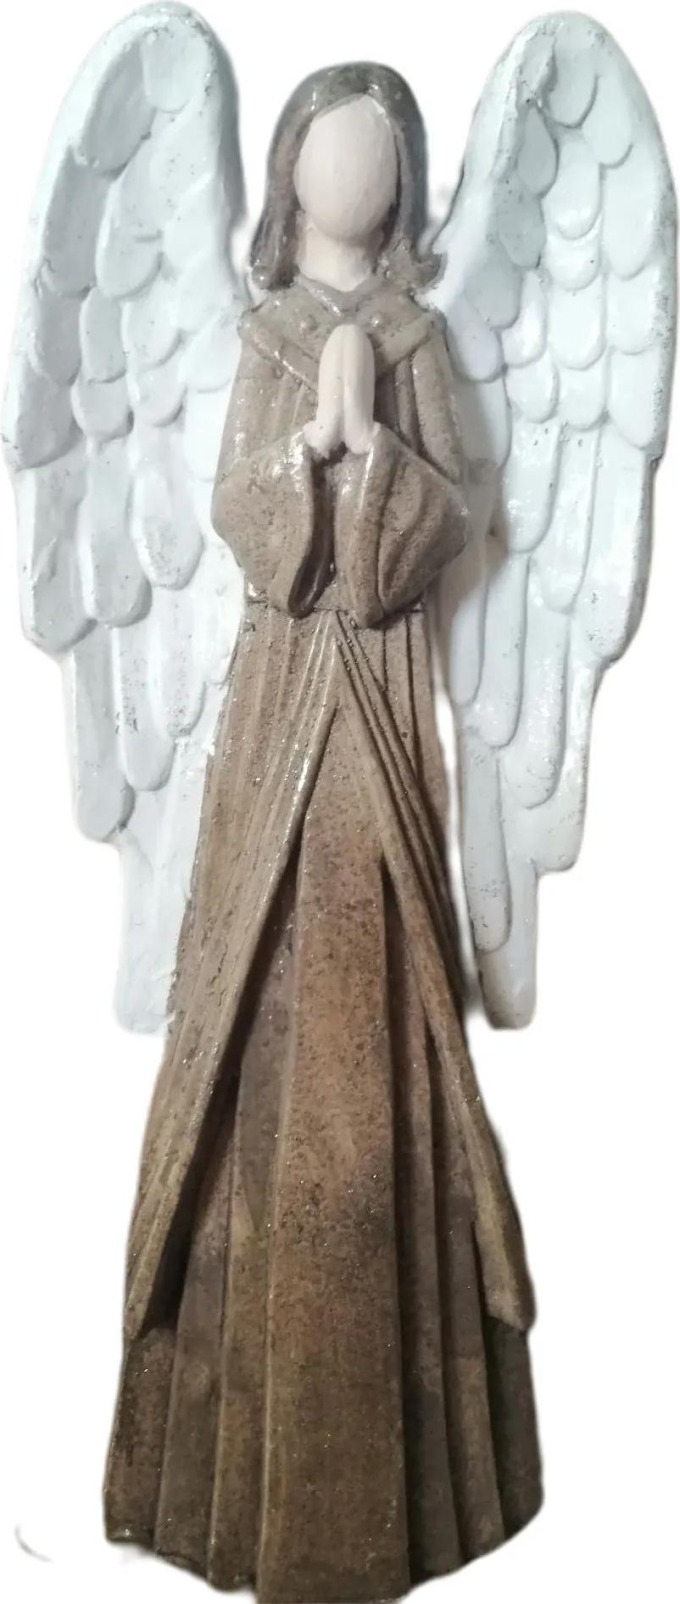 Kovový andělský sochařský kousek s patinou, výška 56 cm